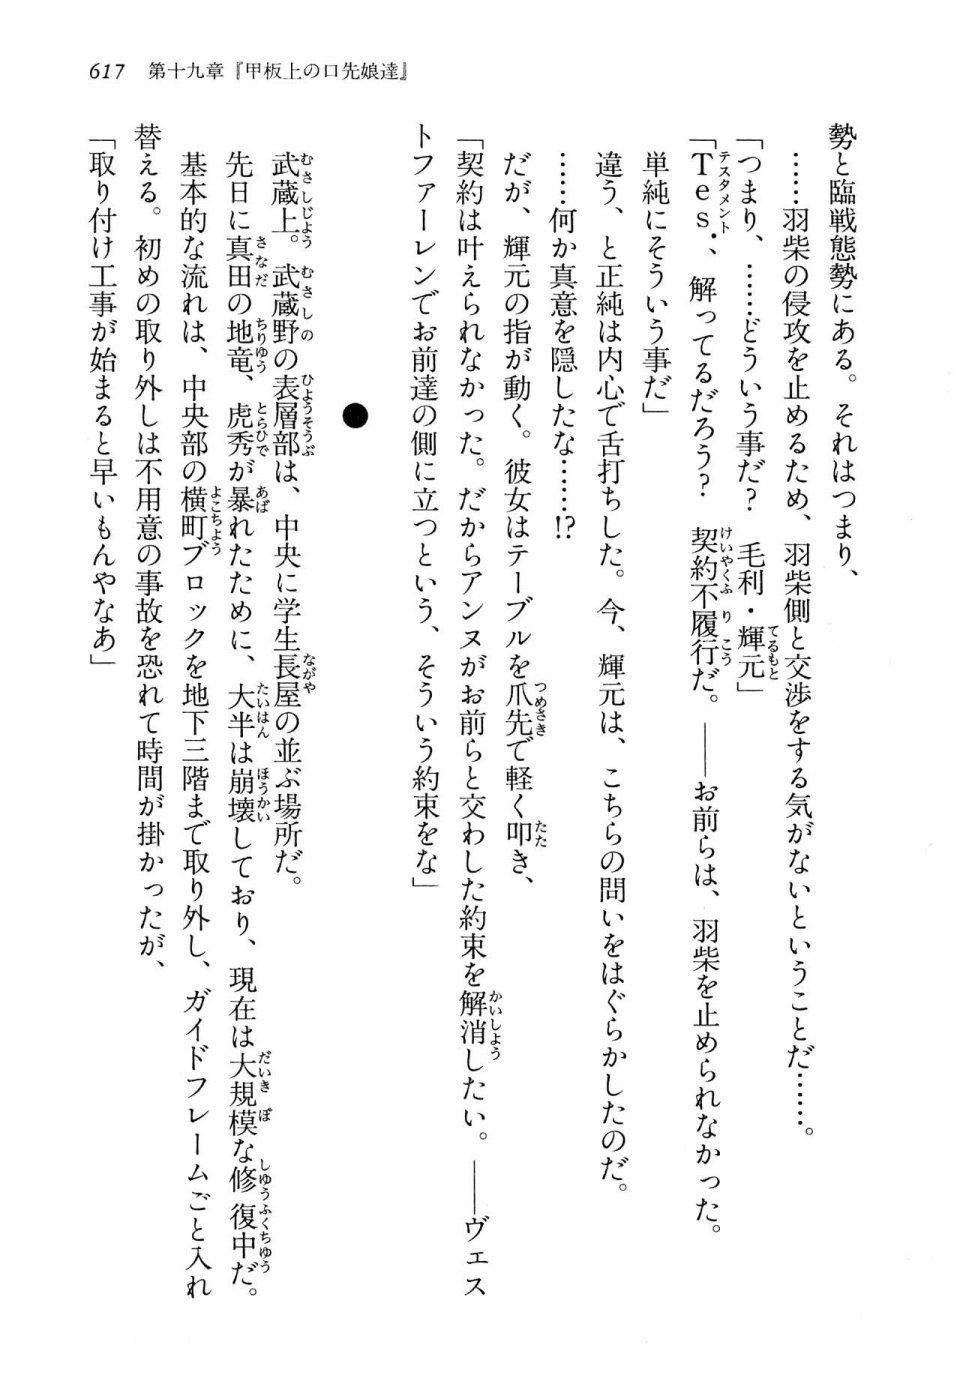 Kyoukai Senjou no Horizon LN Vol 13(6A) - Photo #617